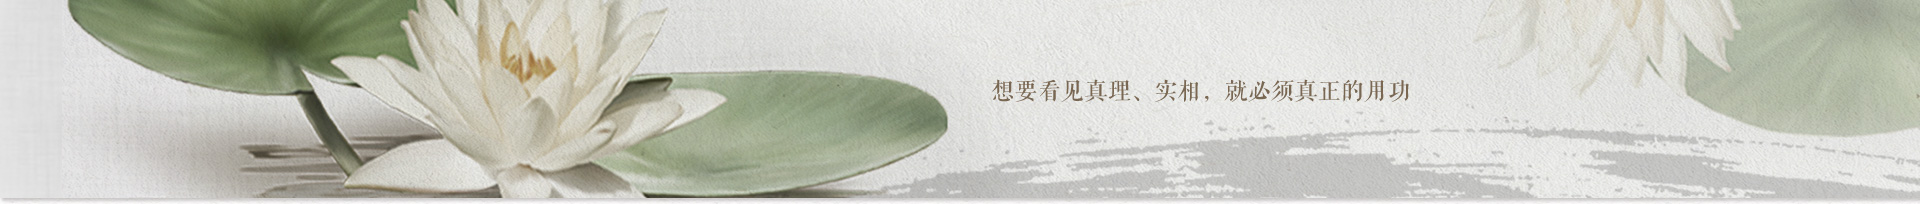 第28期福建资国寺禅七(2012.6.5-11)